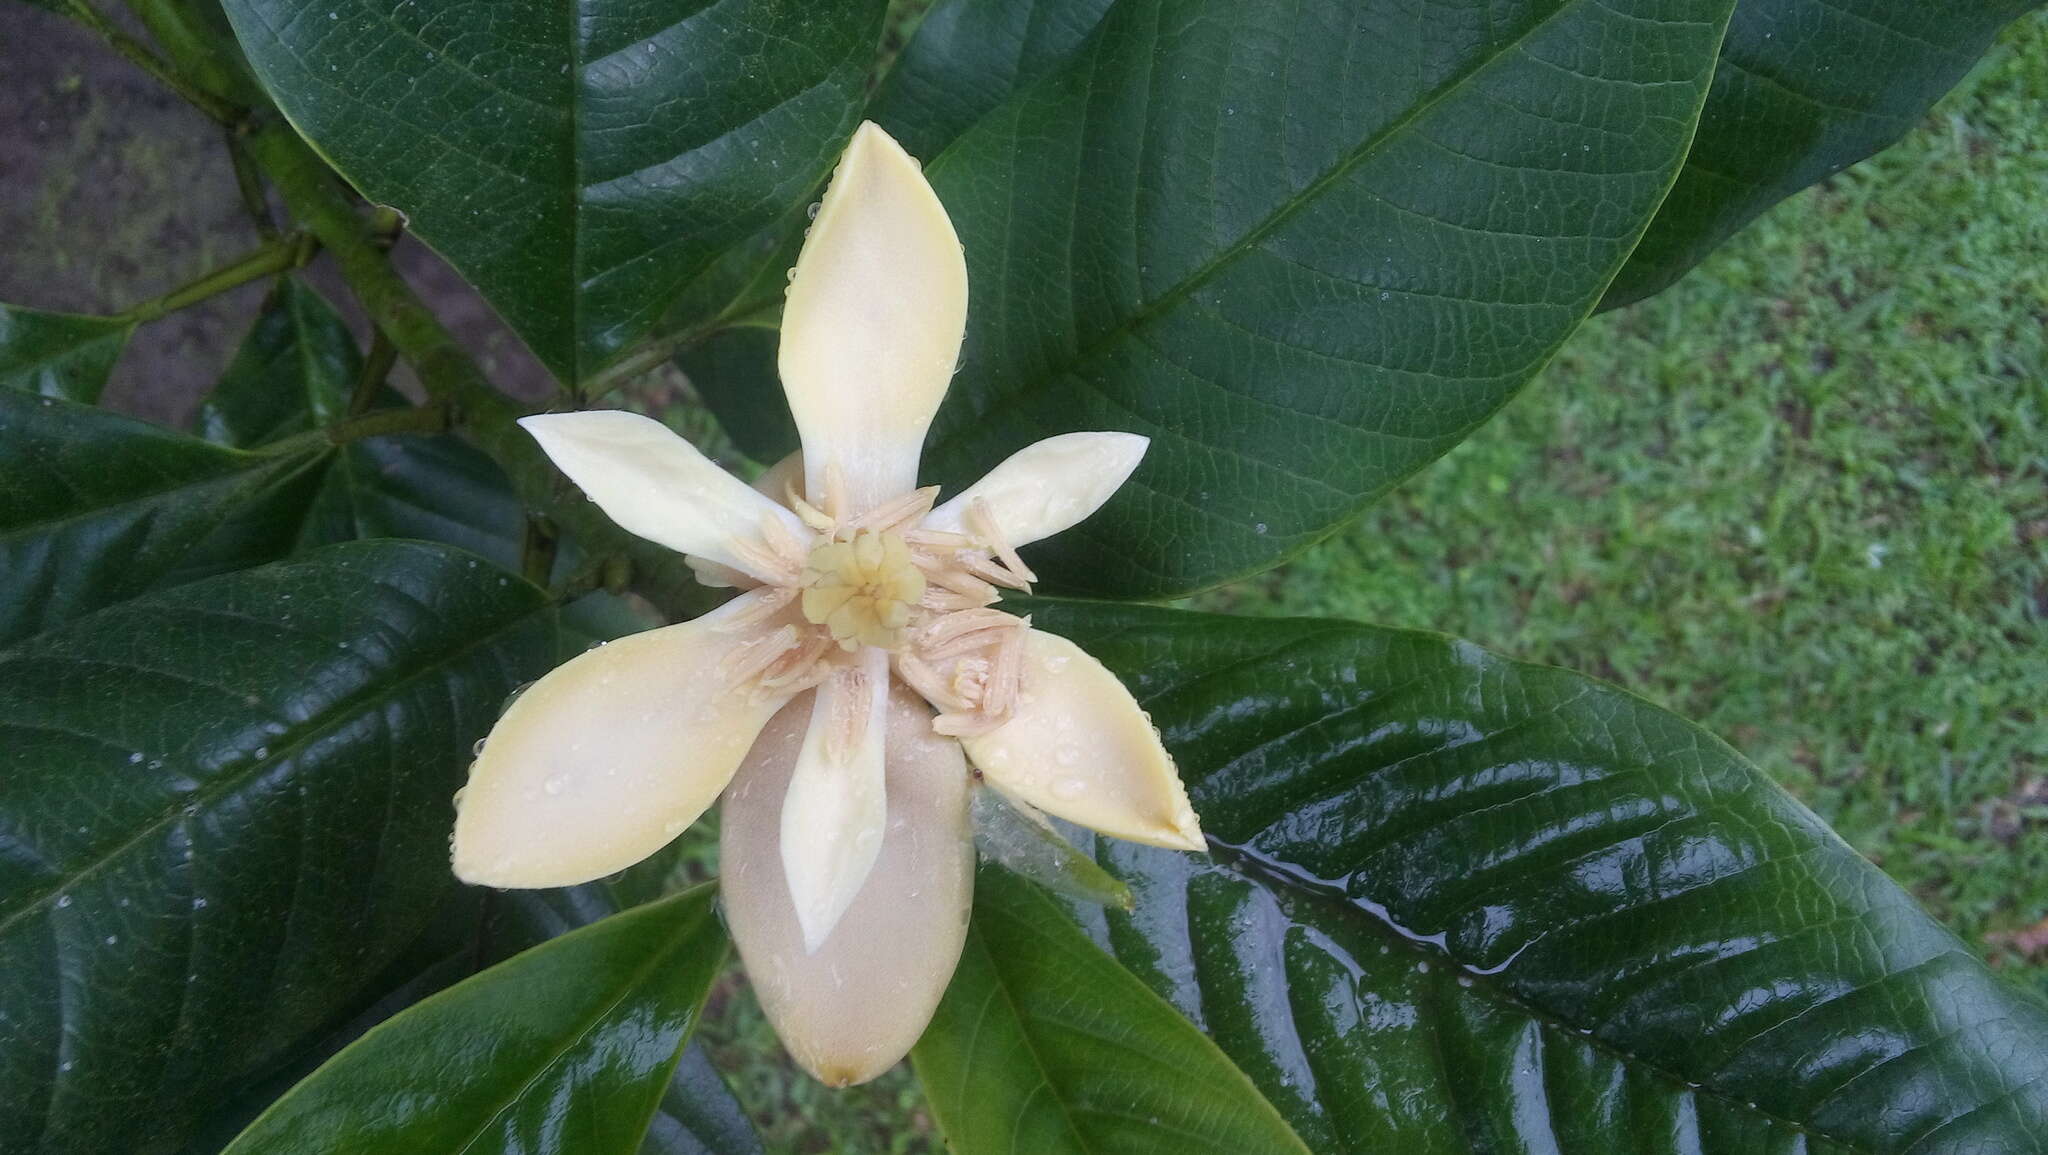 Image of Magnolia gilbertoi (Lozano) Govaerts